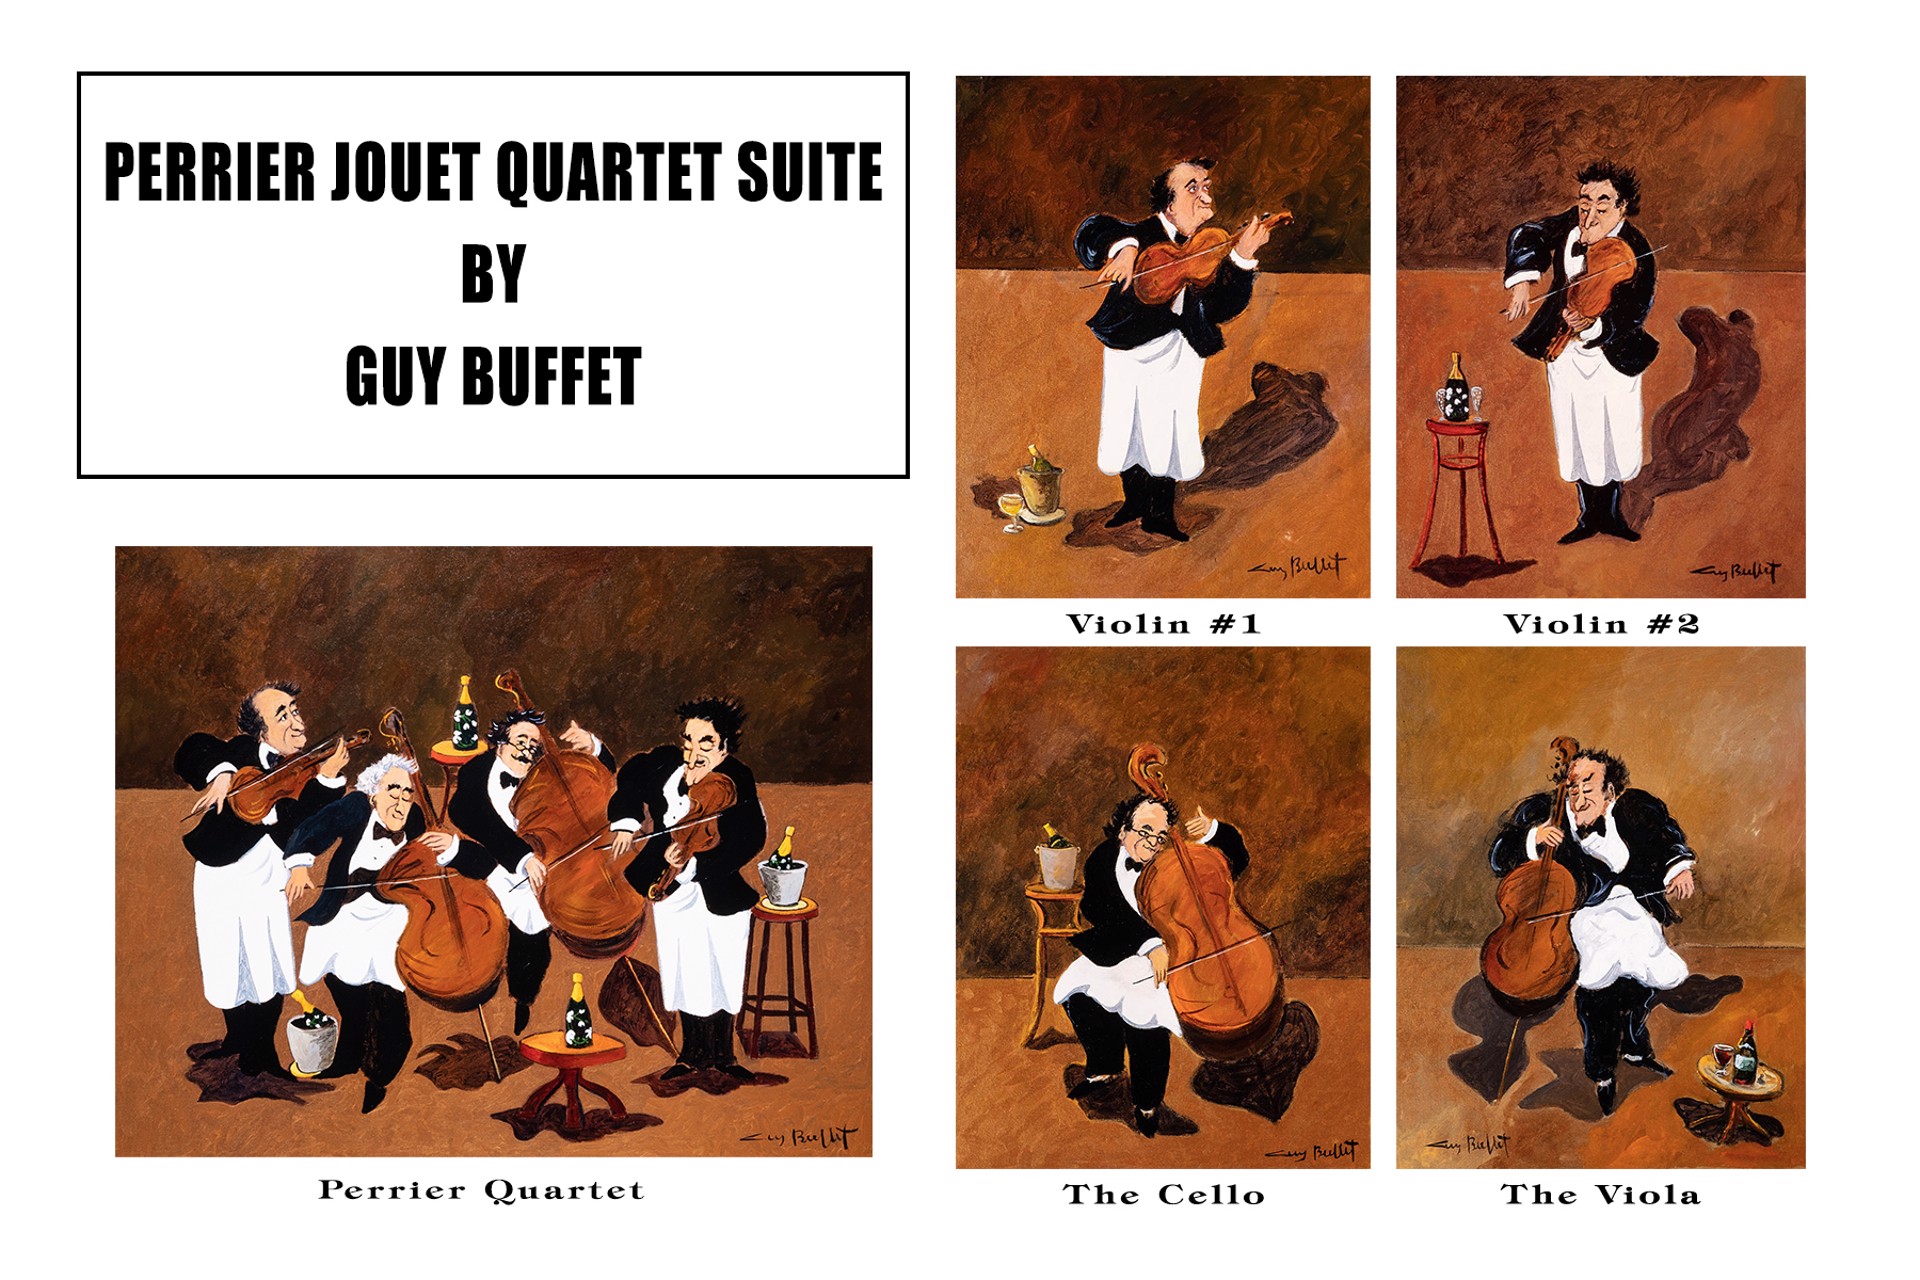 Perrier Jouet Quartet Suite - The Viola by Guy Buffet